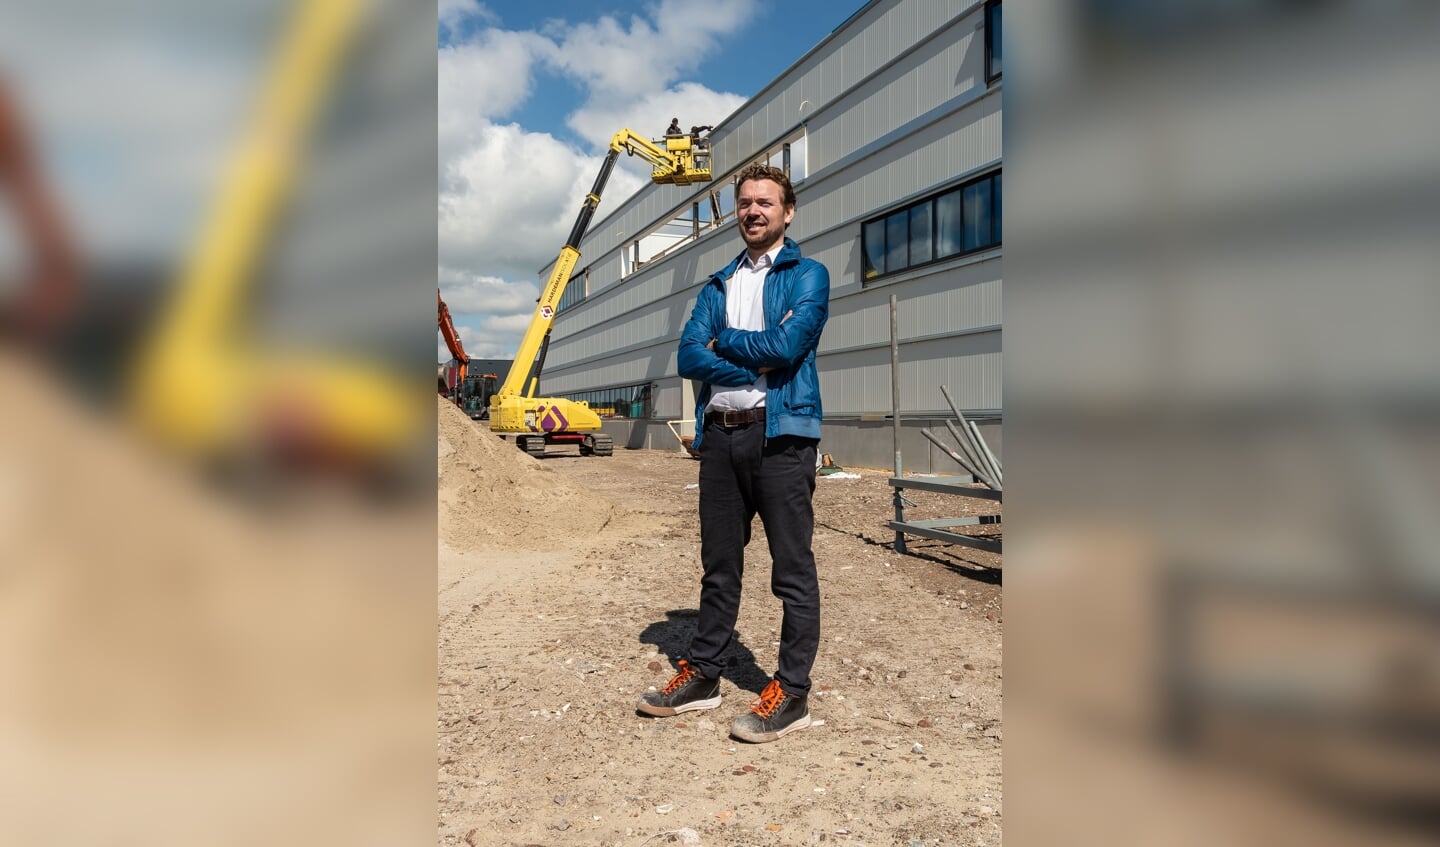 Jurjen Groenhart voor het in aanbouw zijnde nieuwe hoofdkantoor van de Groenhart Groep in Baanstee-Noord.